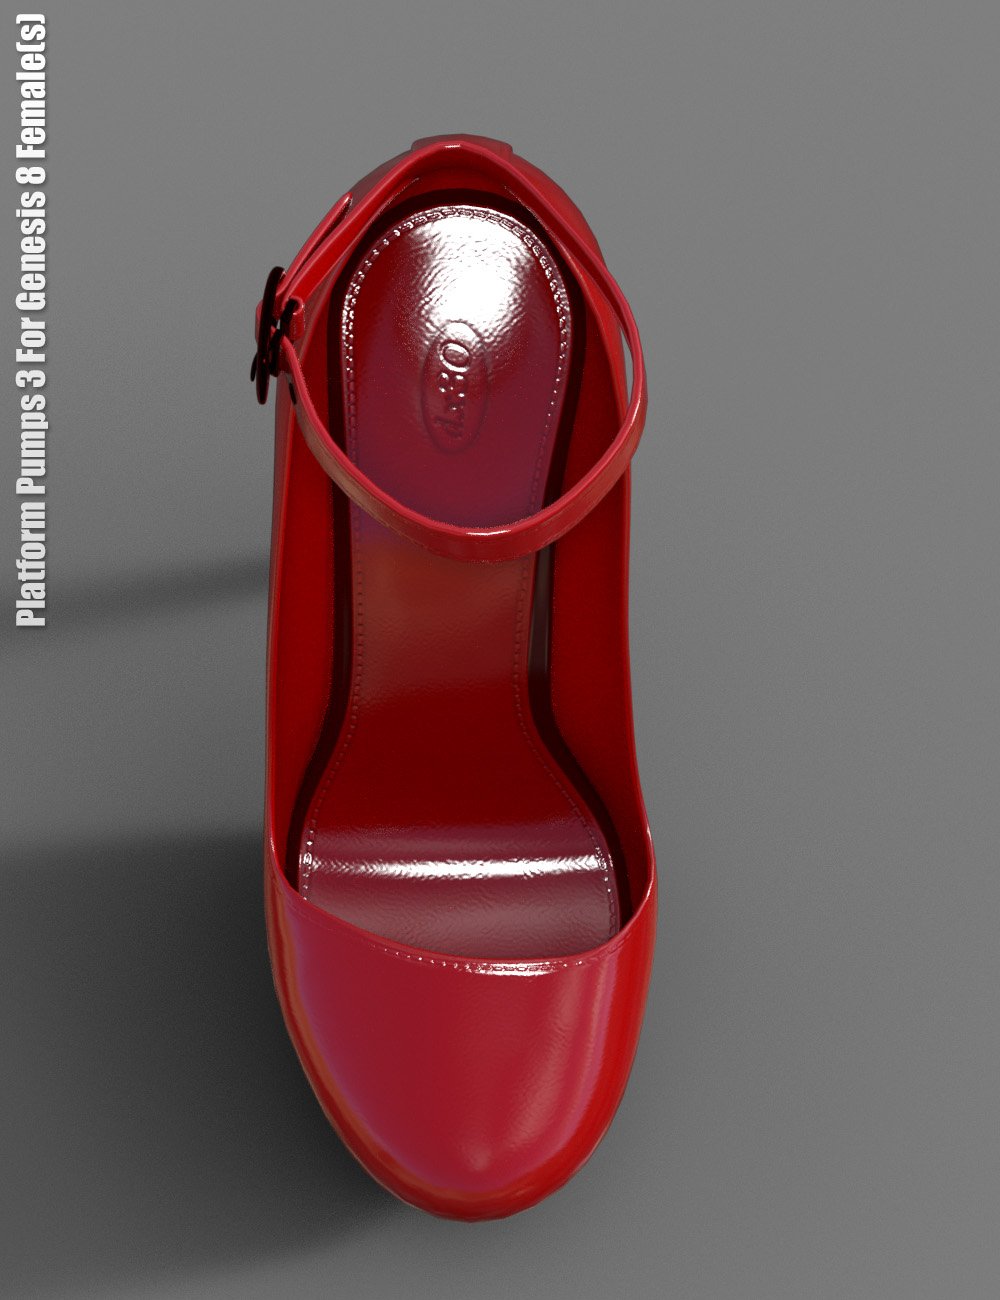 Platform Pumps 3 for Genesis 8 Female(s) by: dx30, 3D Models by Daz 3D